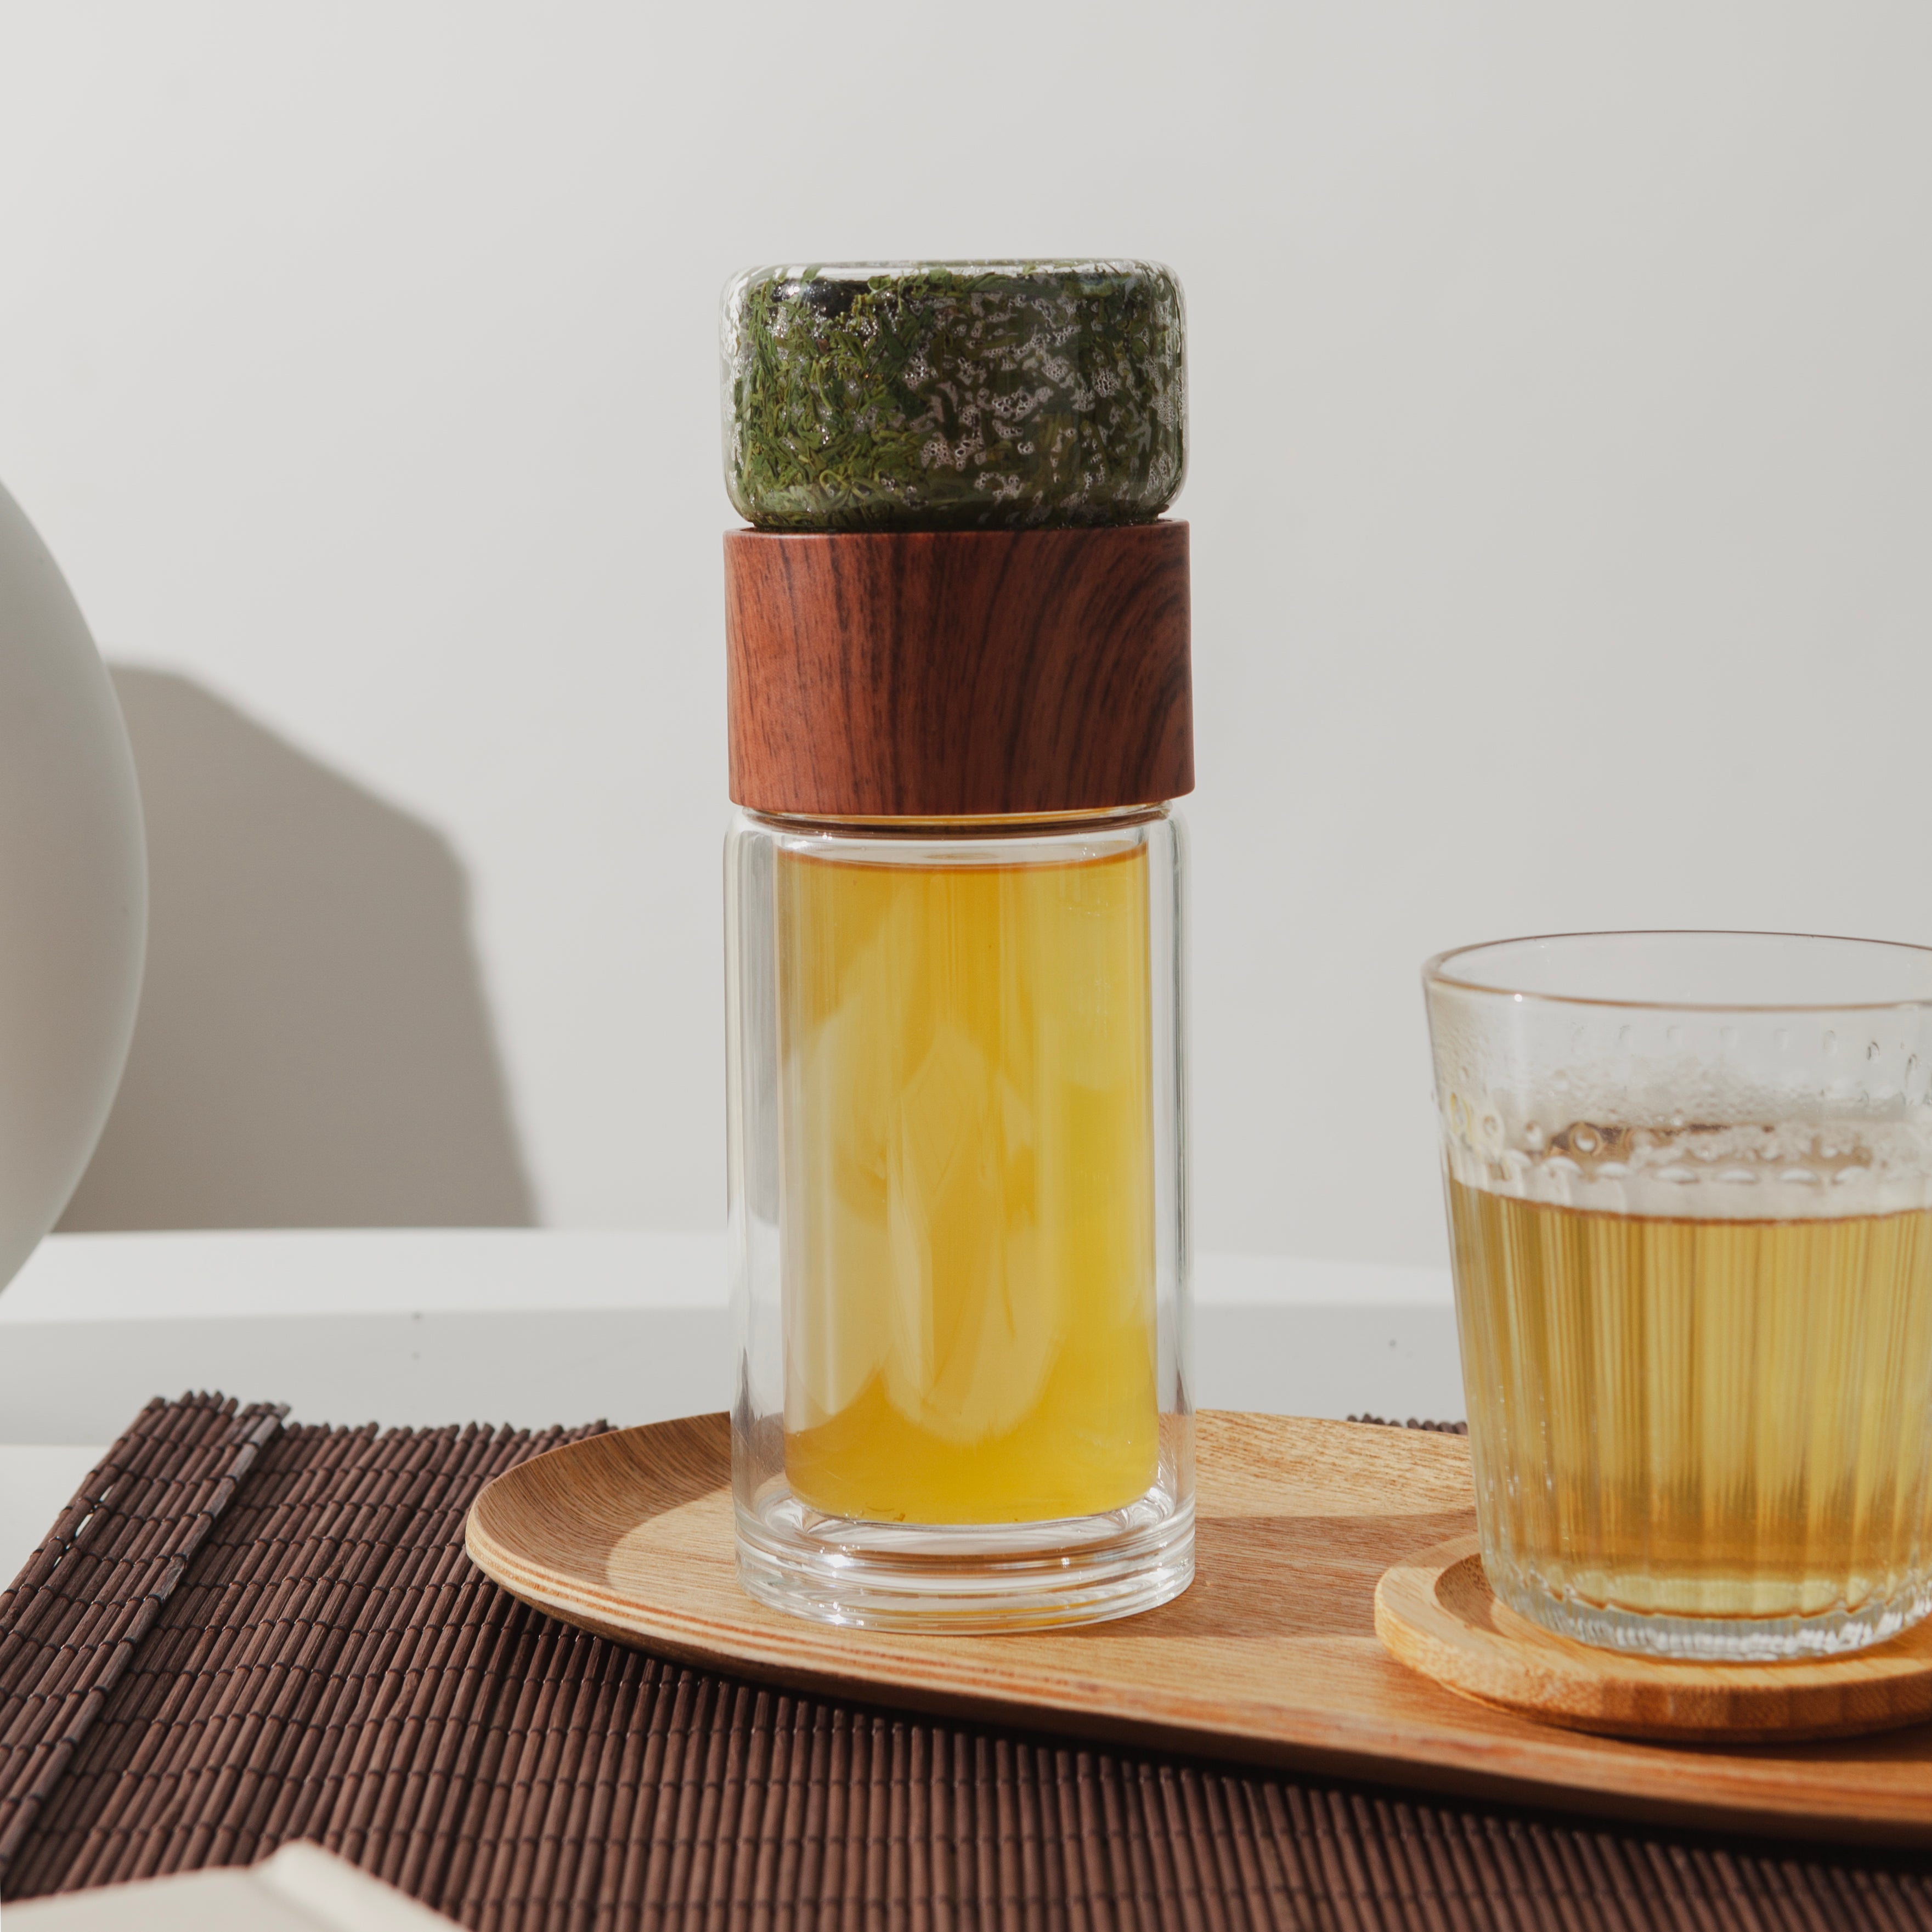 Best Tea Infuser Bottle 2023: Perlure's Portable Loose Leaf Tea Infuser